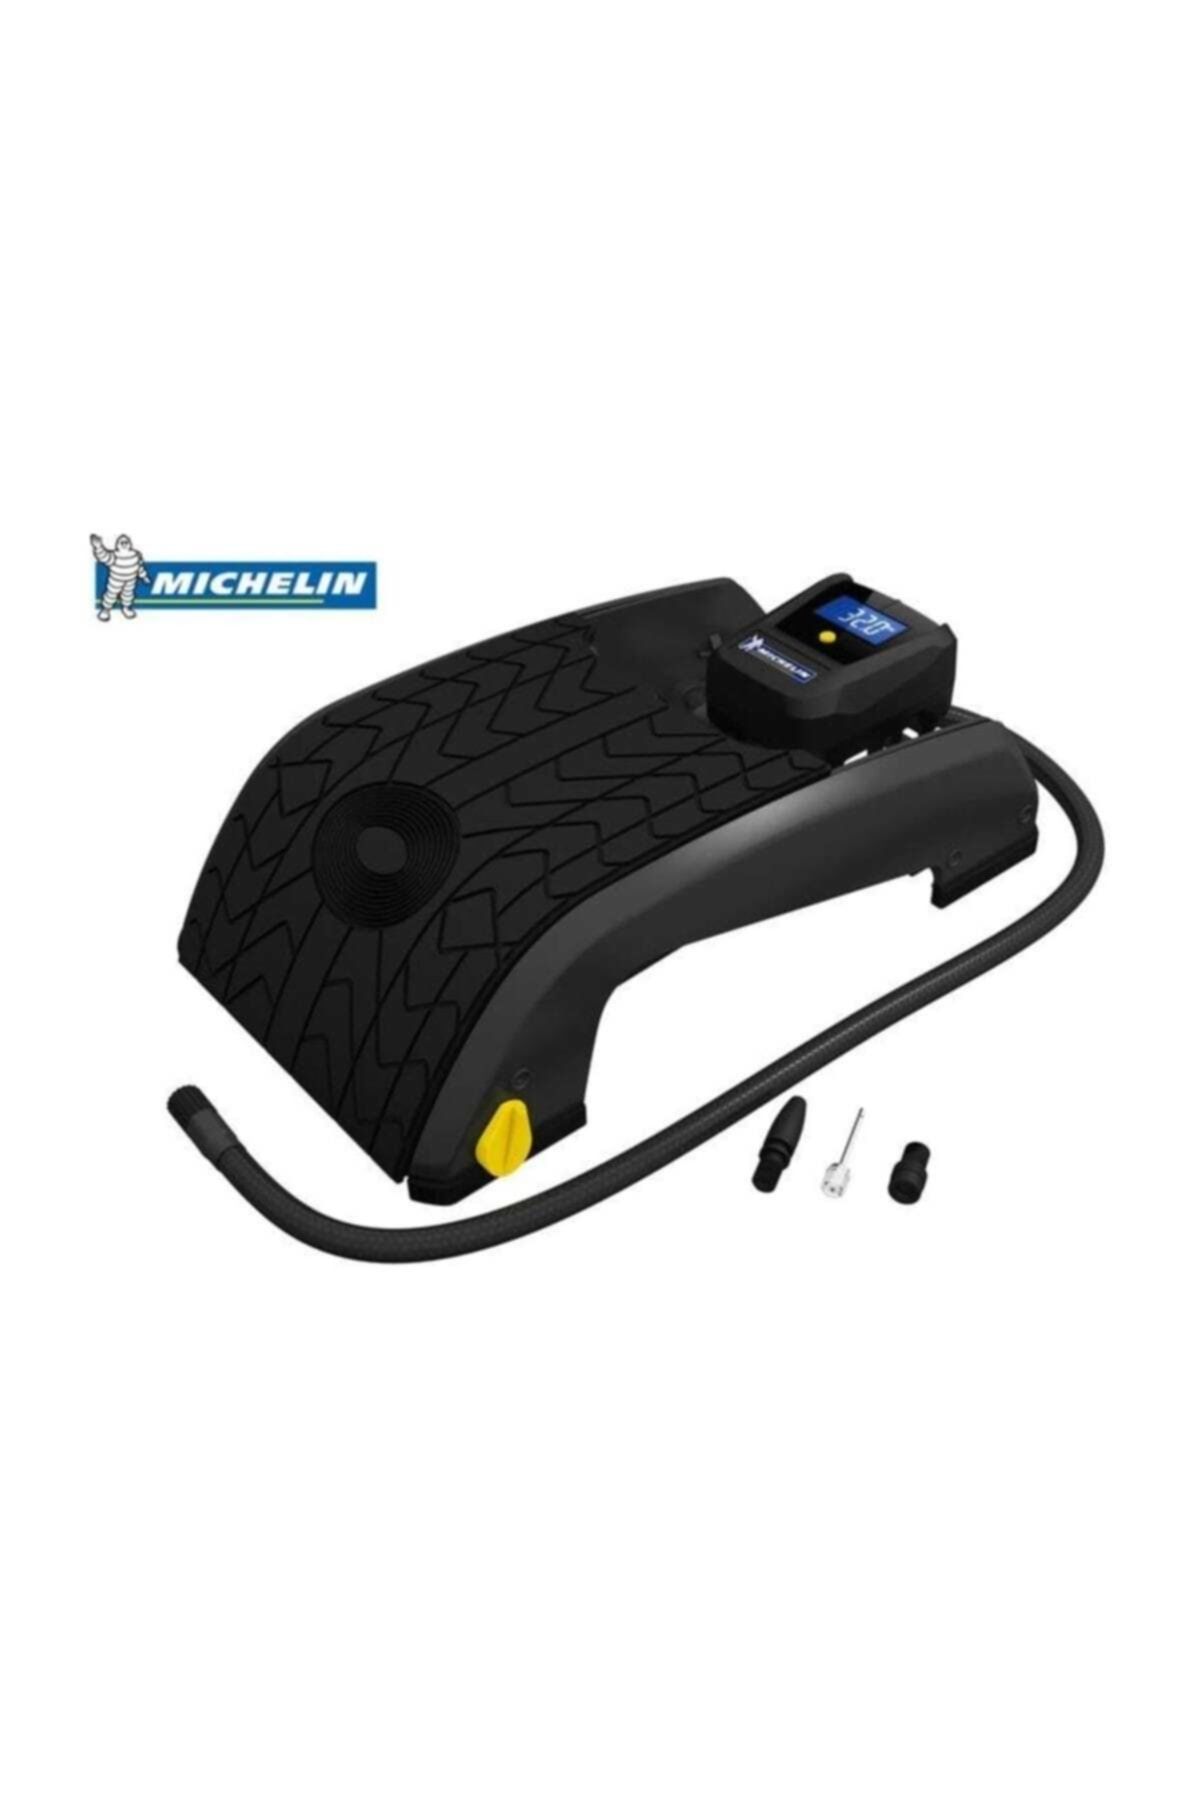 Michelin Mc12209 Dijital Basınç Göstergeli Çift Pistonlu Ayak Pompası